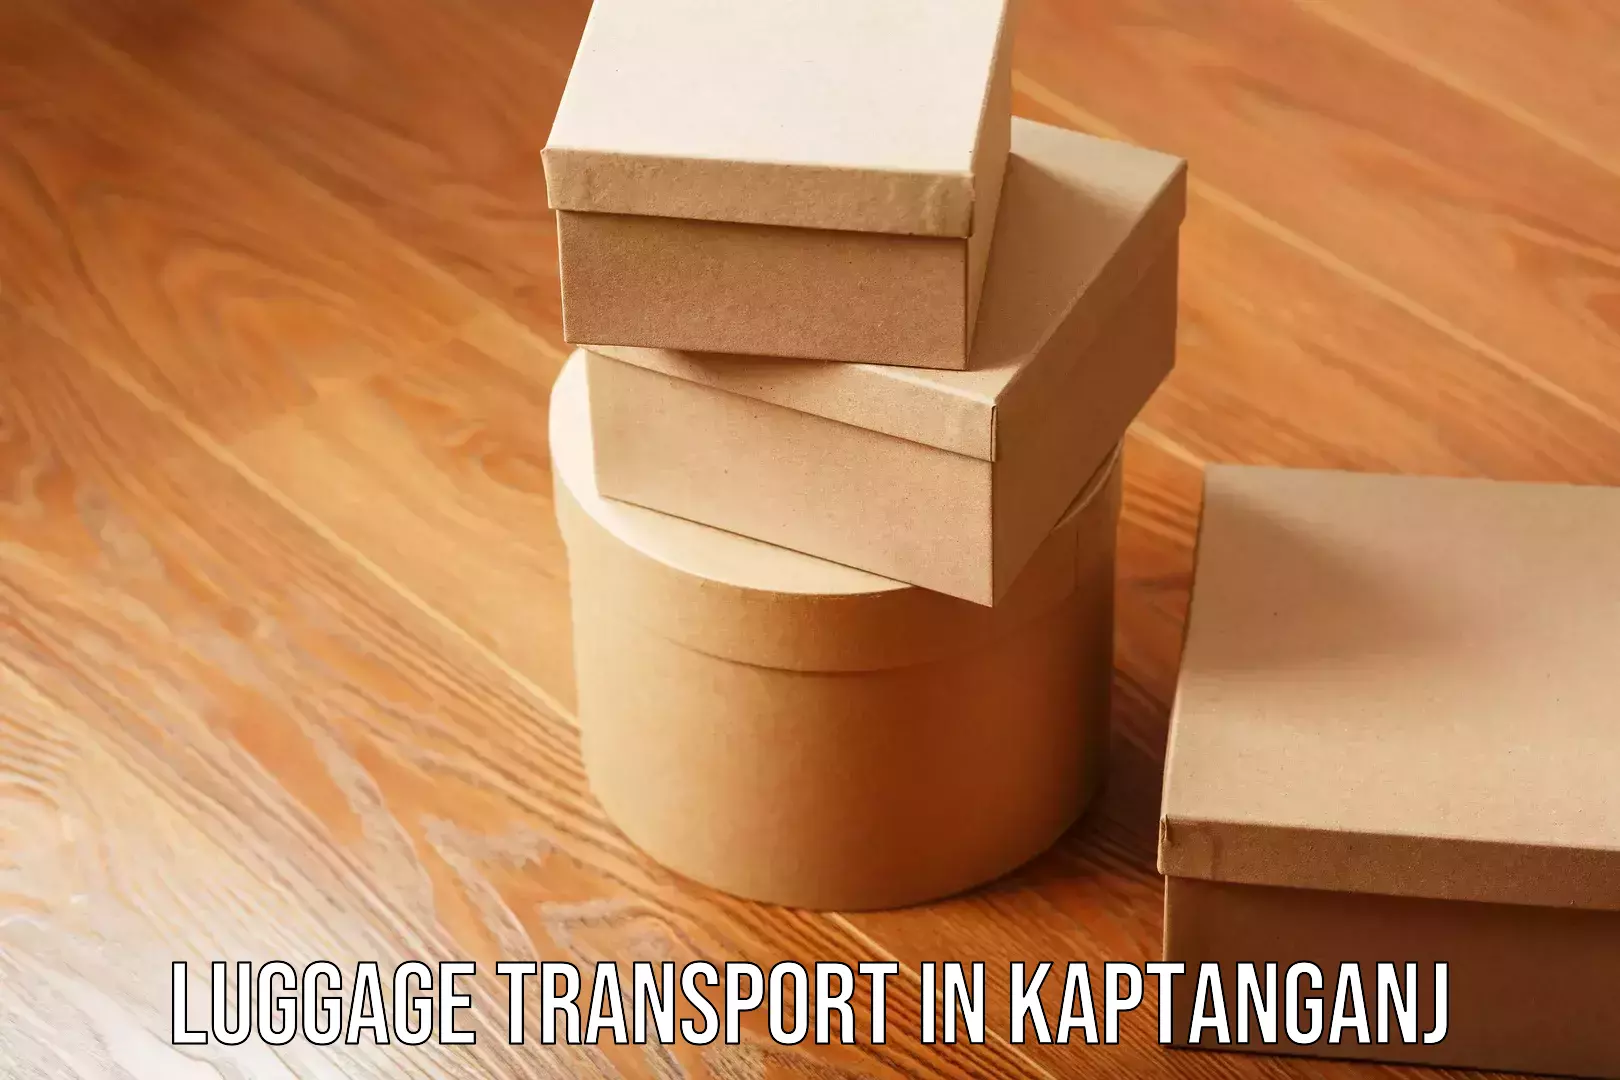 Emergency luggage shipping in Kaptanganj